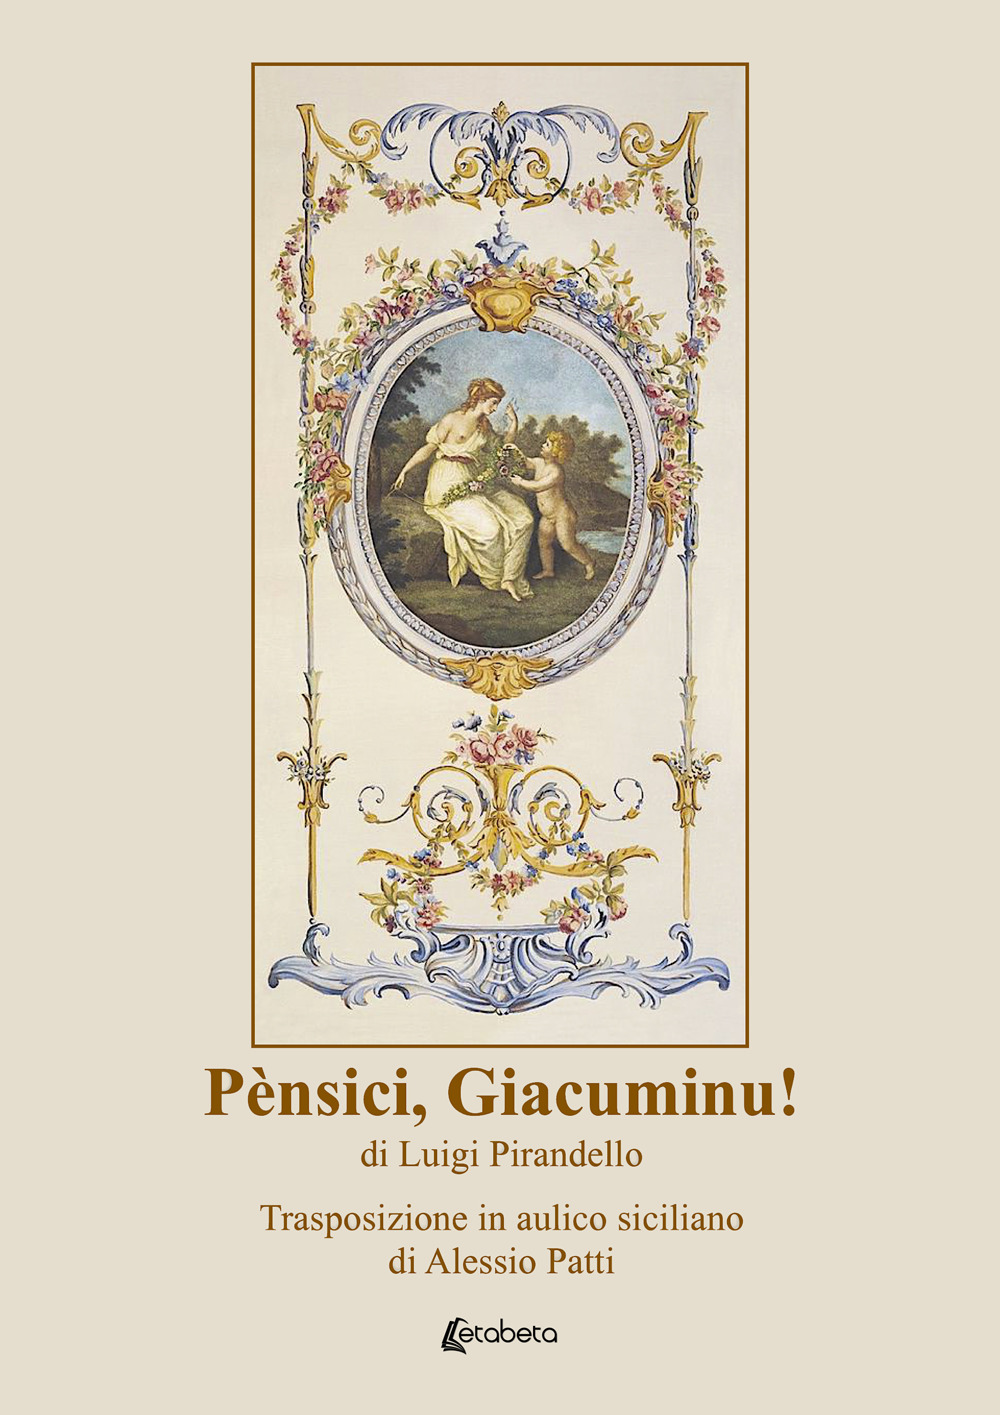 Pènsici, Giacuminu! di Luigi Pirandello. Trasposizione in aulico siciliano di Alessio Patti